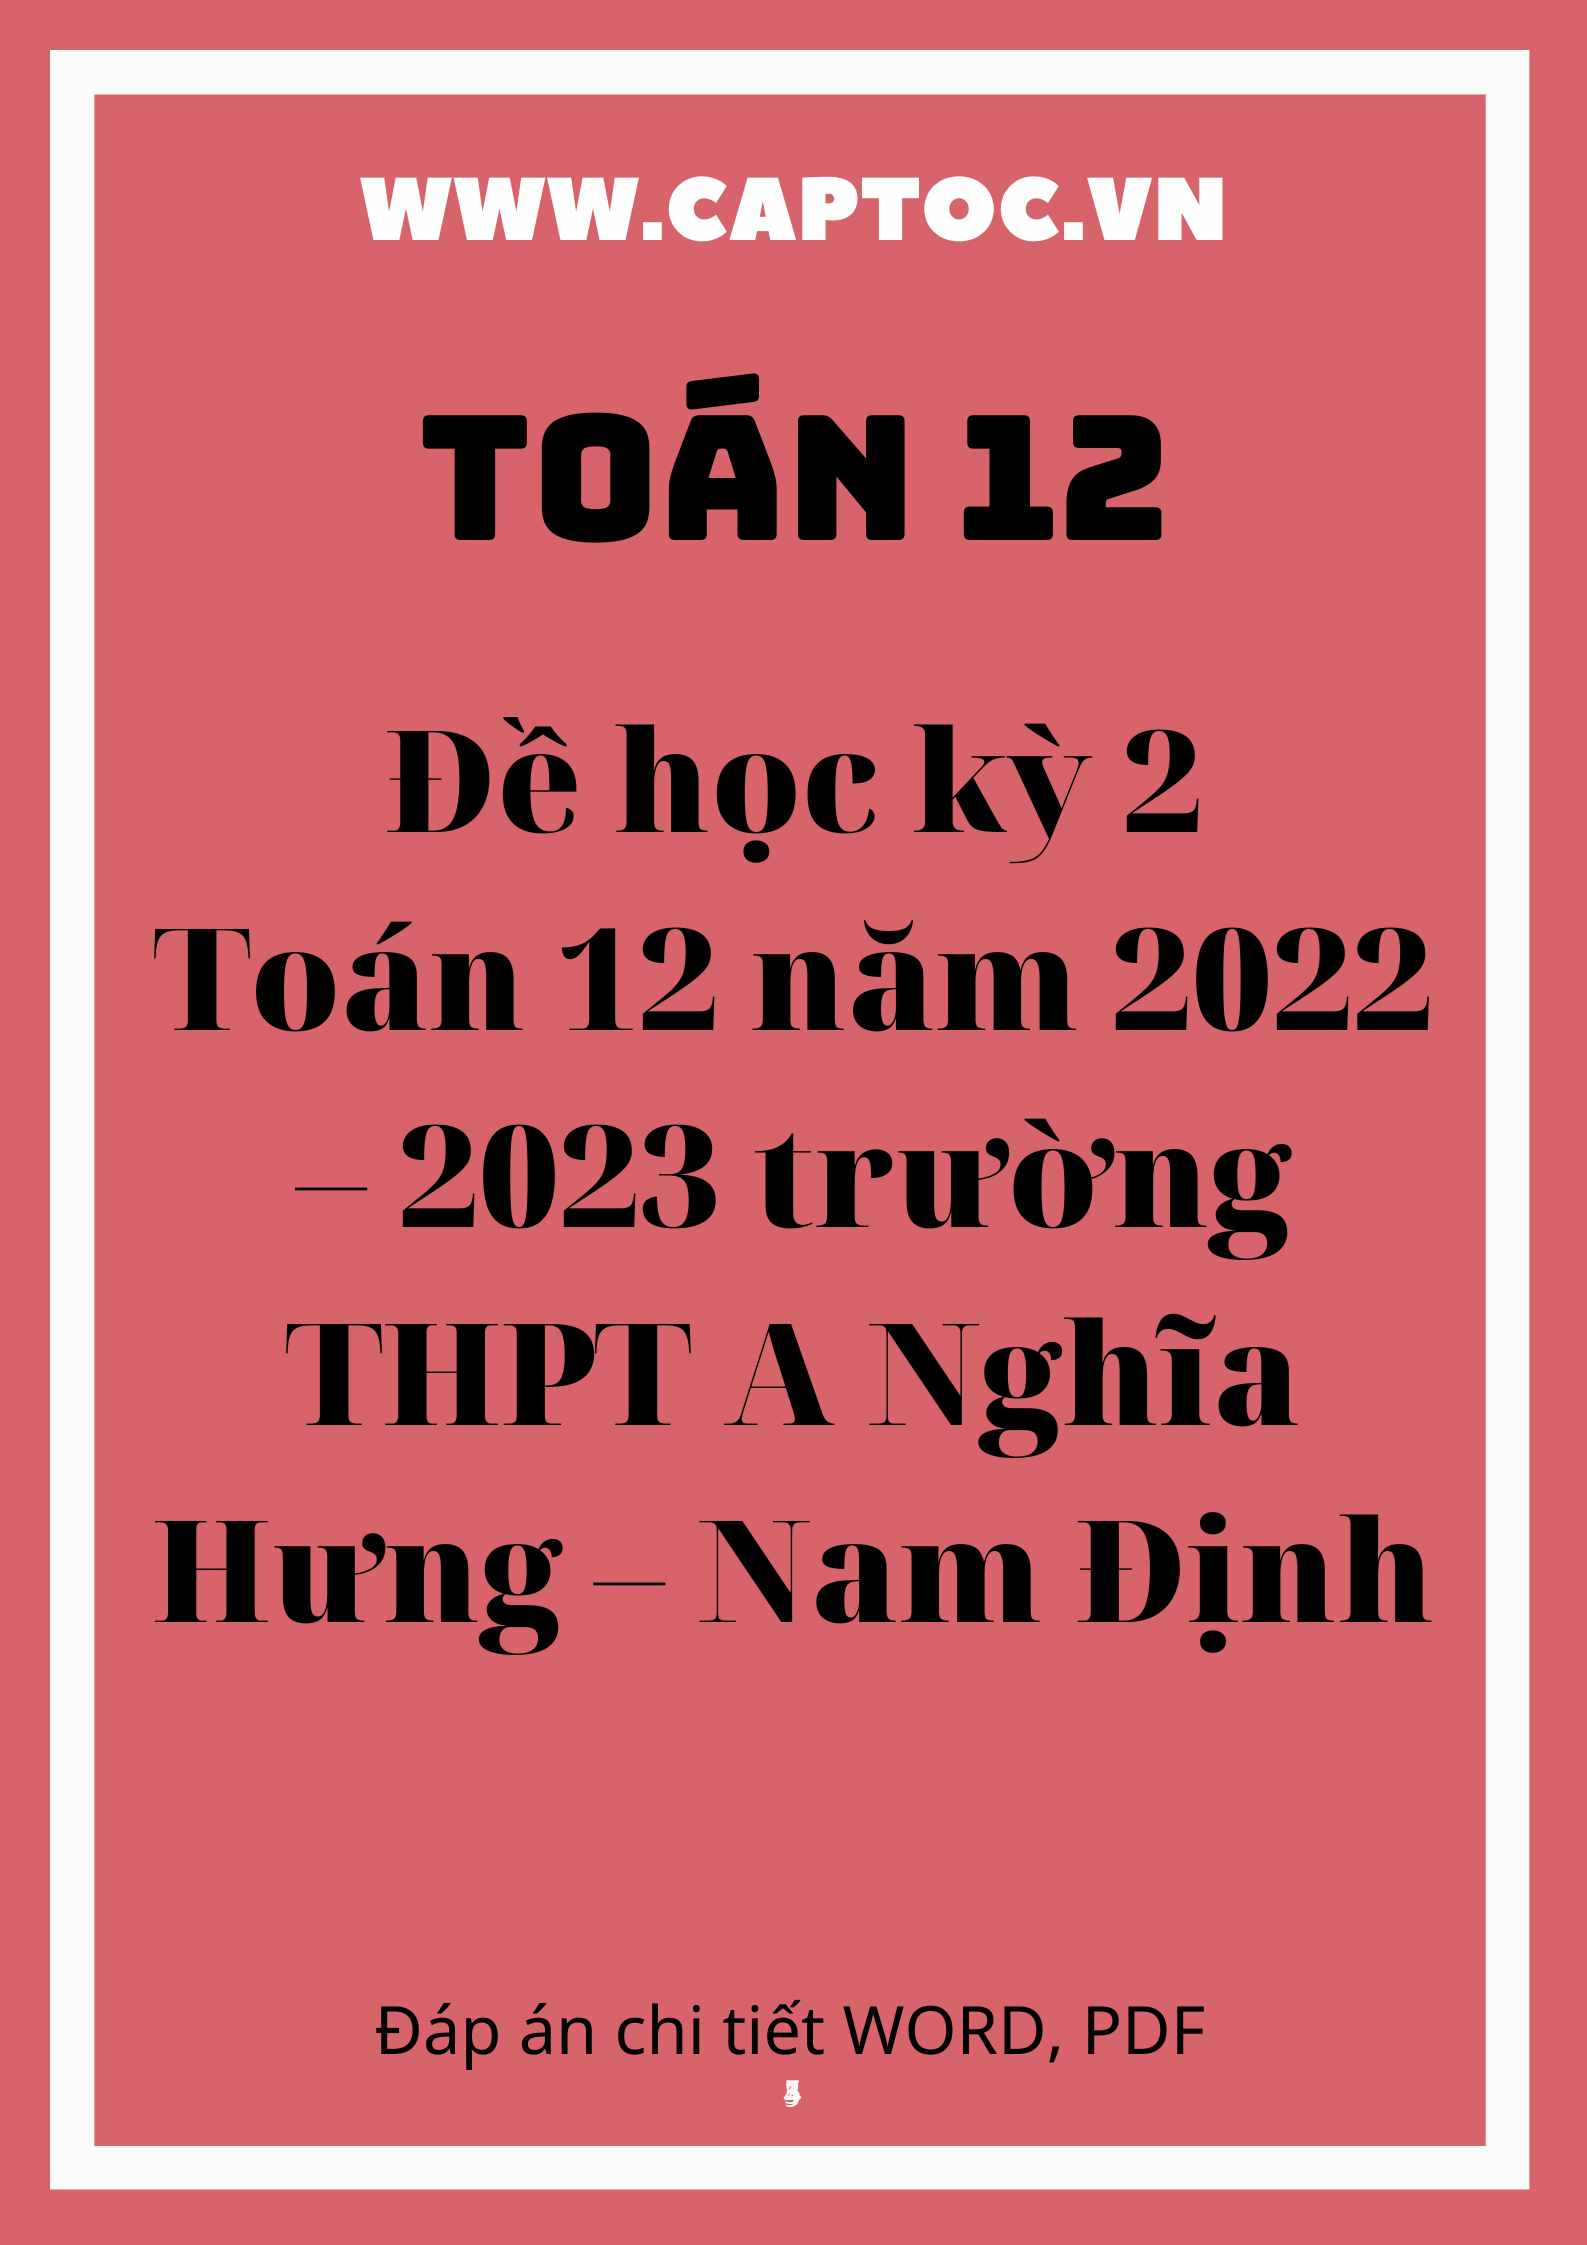 Đề học kỳ 2 Toán 12 năm 2022 – 2023 trường THPT A Nghĩa Hưng – Nam Định